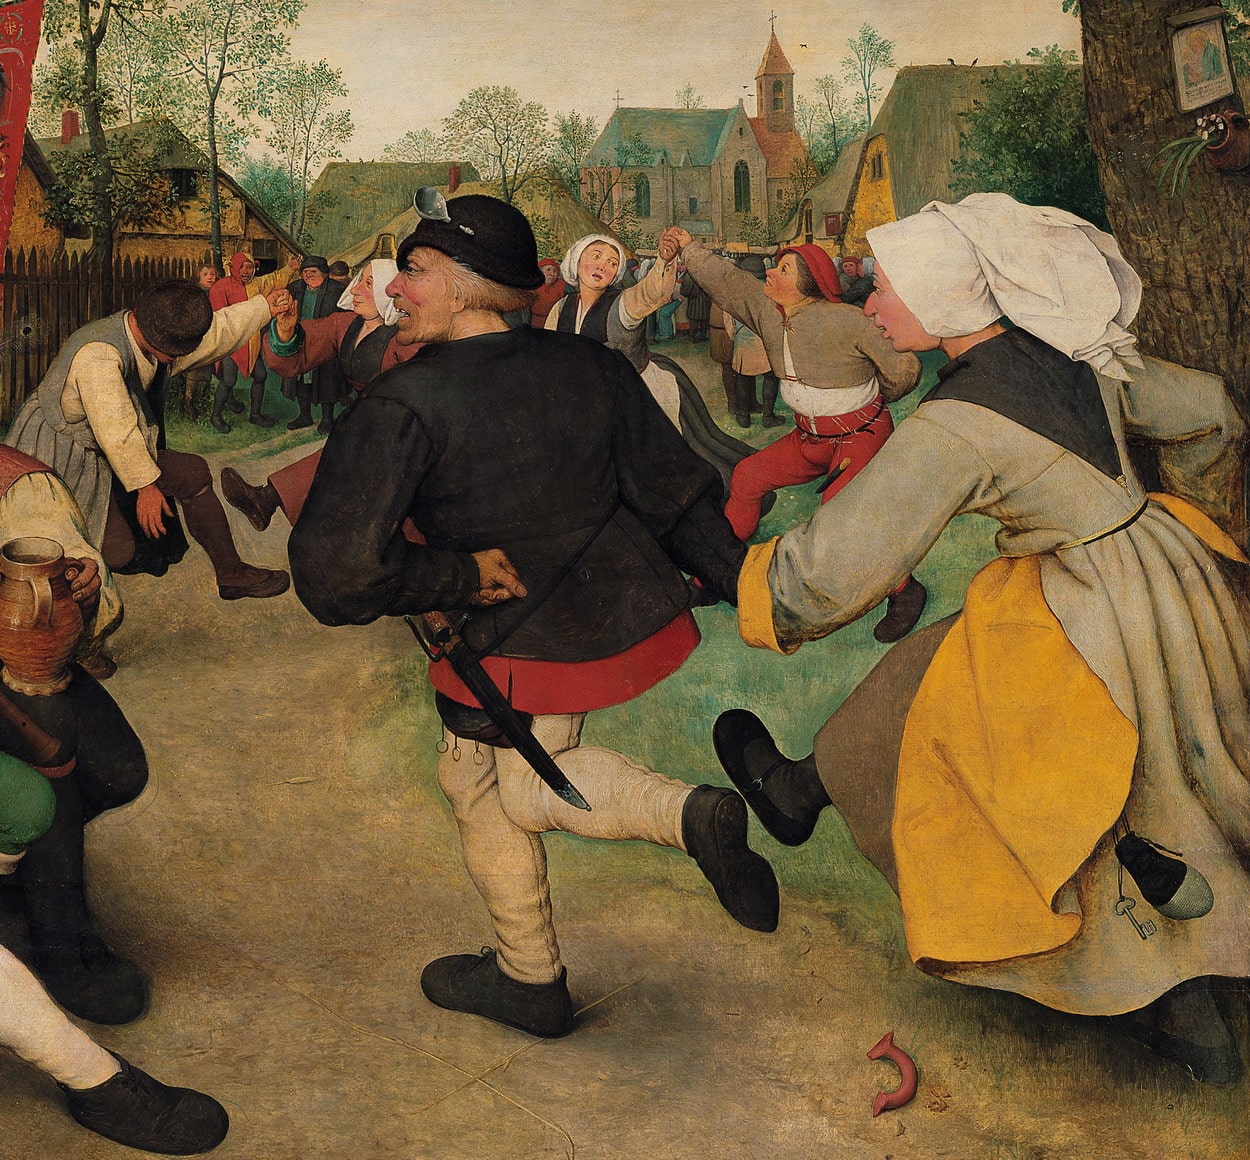 Pieter Brueghel il Vecchio (1525/1530-1569), “La danza dei contadini”, 1568 c.a, olio su tavola (particolare). Vienna (Austria), Kunsthistorisches Museum